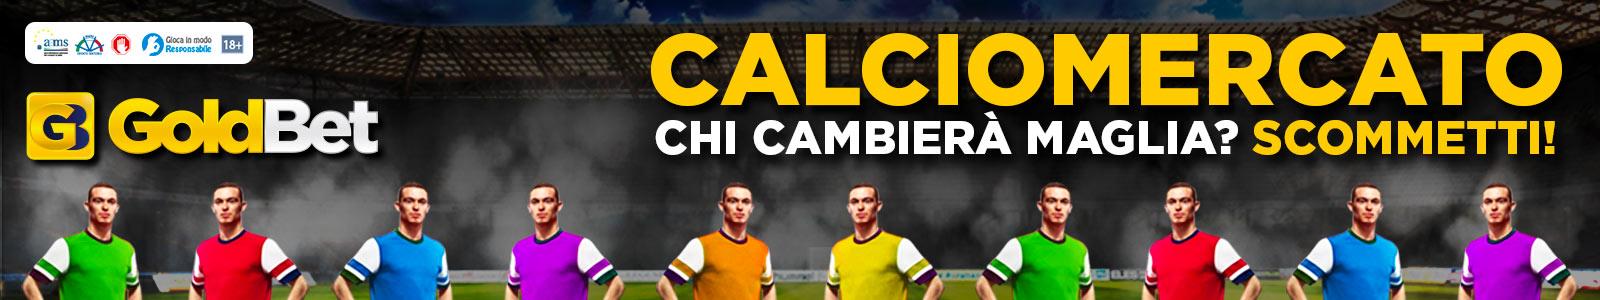 banner_calciomercato